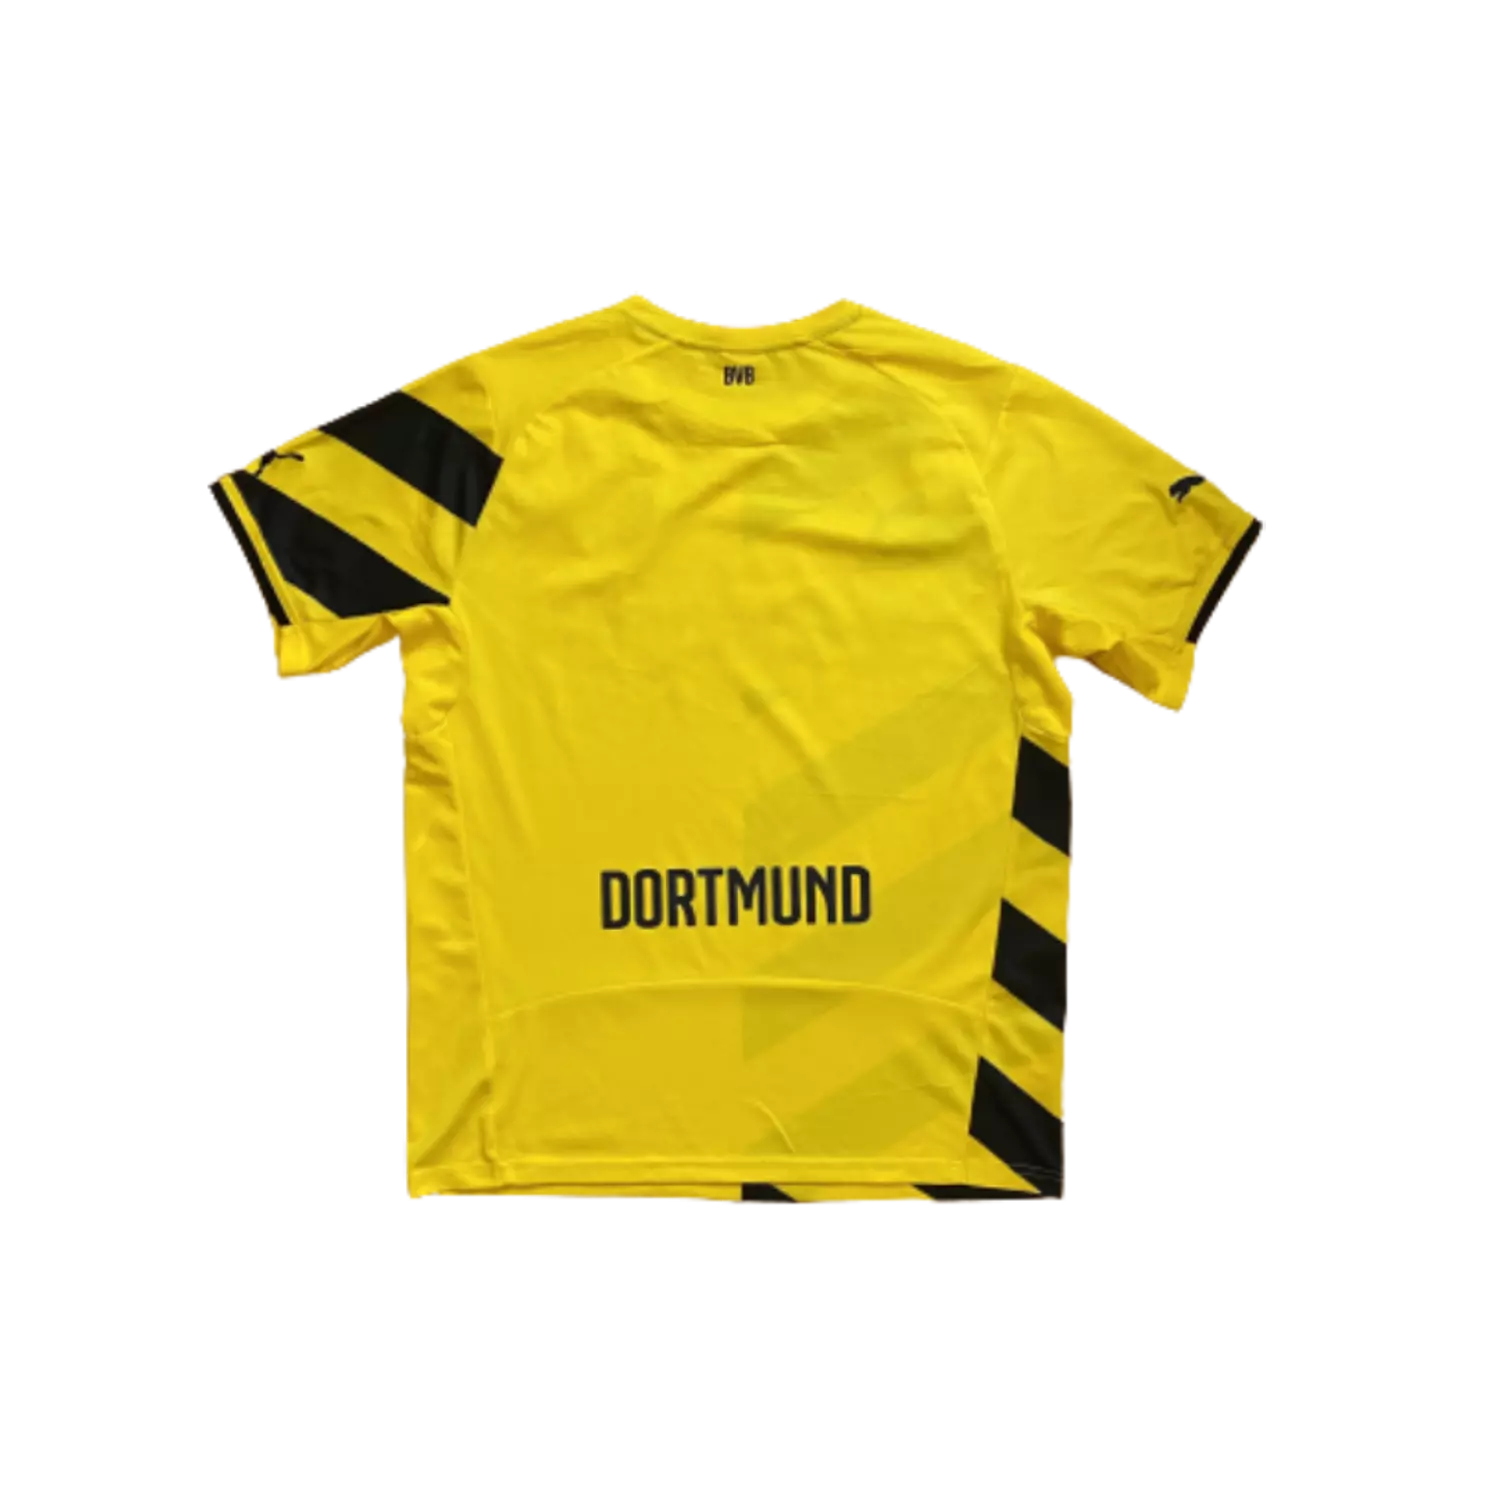 Borussia Dortmund 2014/15 Home Kit (L) 1